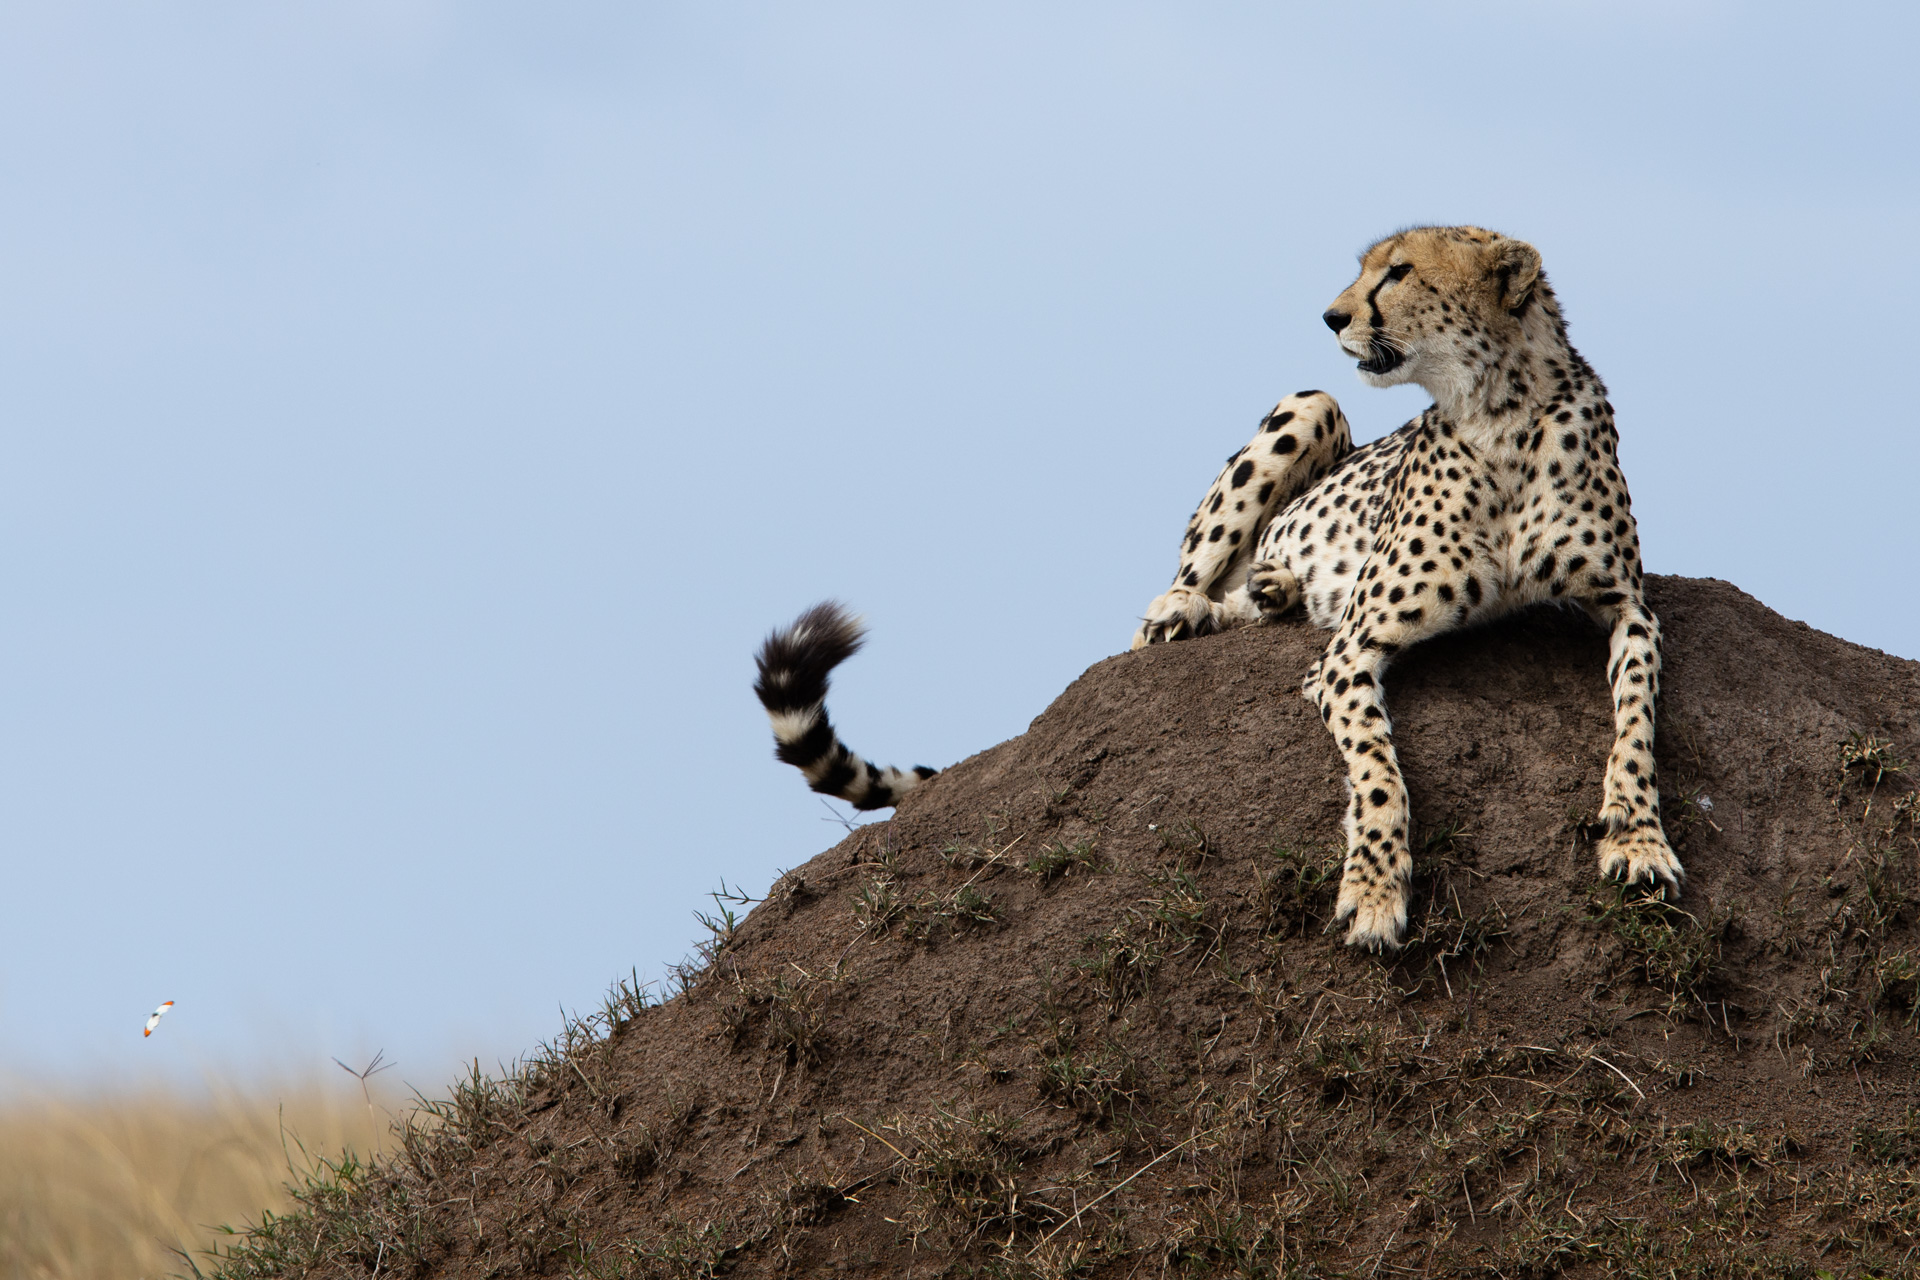 Cheetah Tail flick